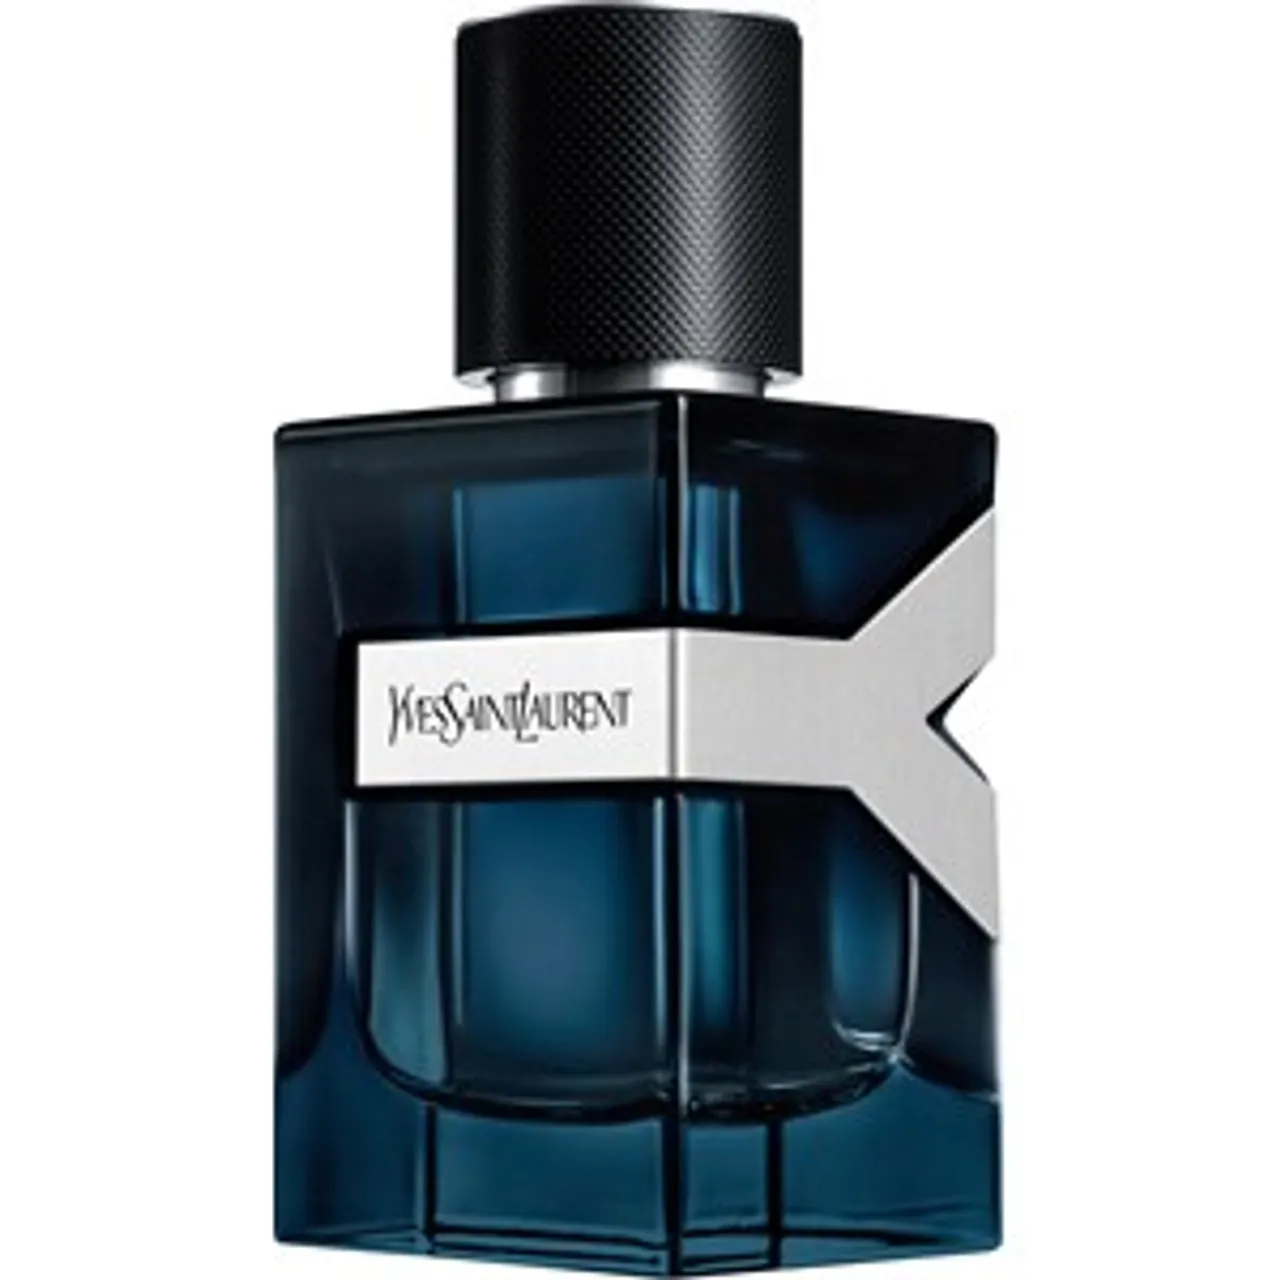 Yves Saint Laurent Eau de Parfum Spray Intense 1 60 ml